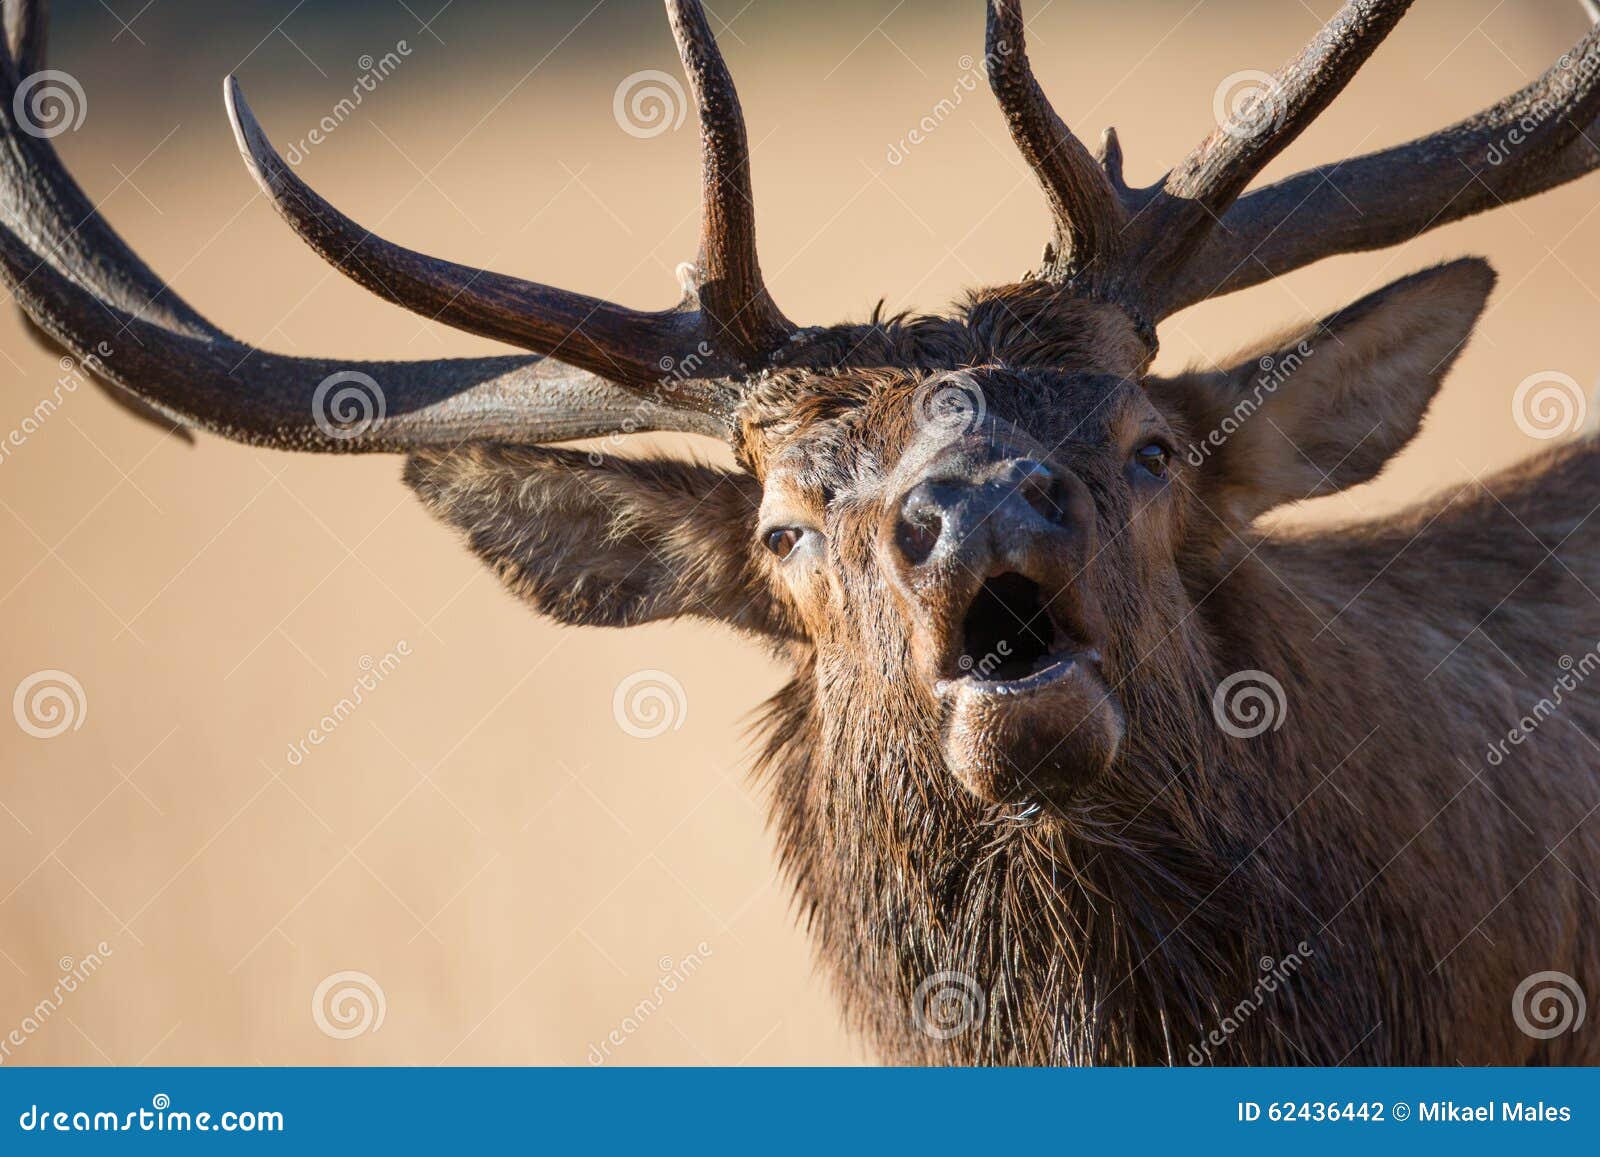 bull elk bugling up close